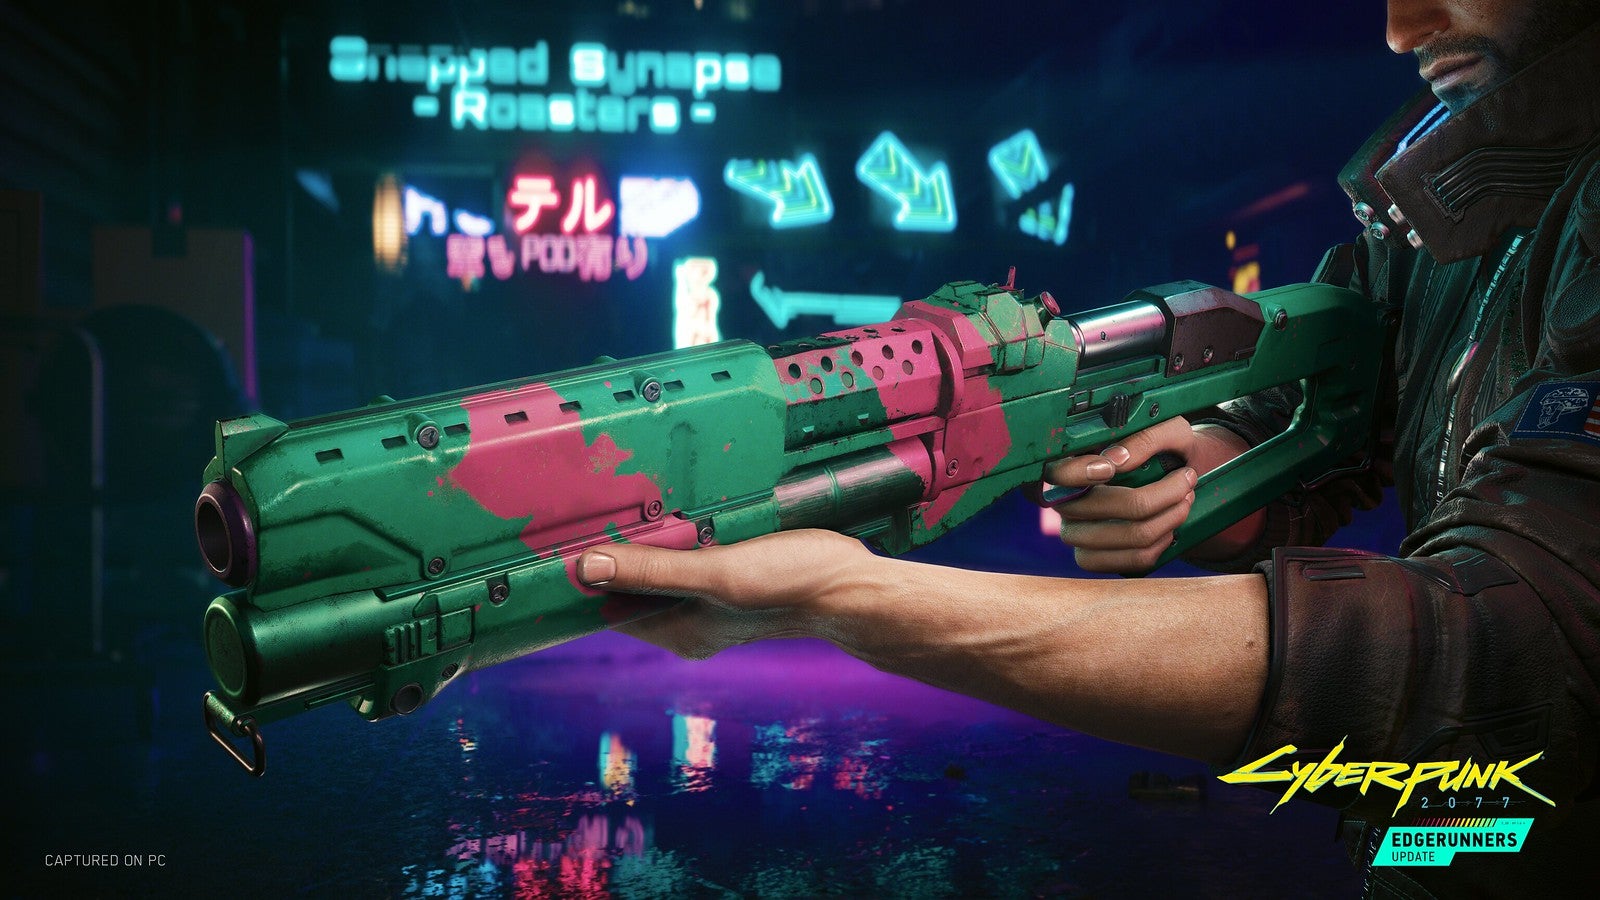 A close-up of Rebecca's shotgun in Cyberpunk 2077.